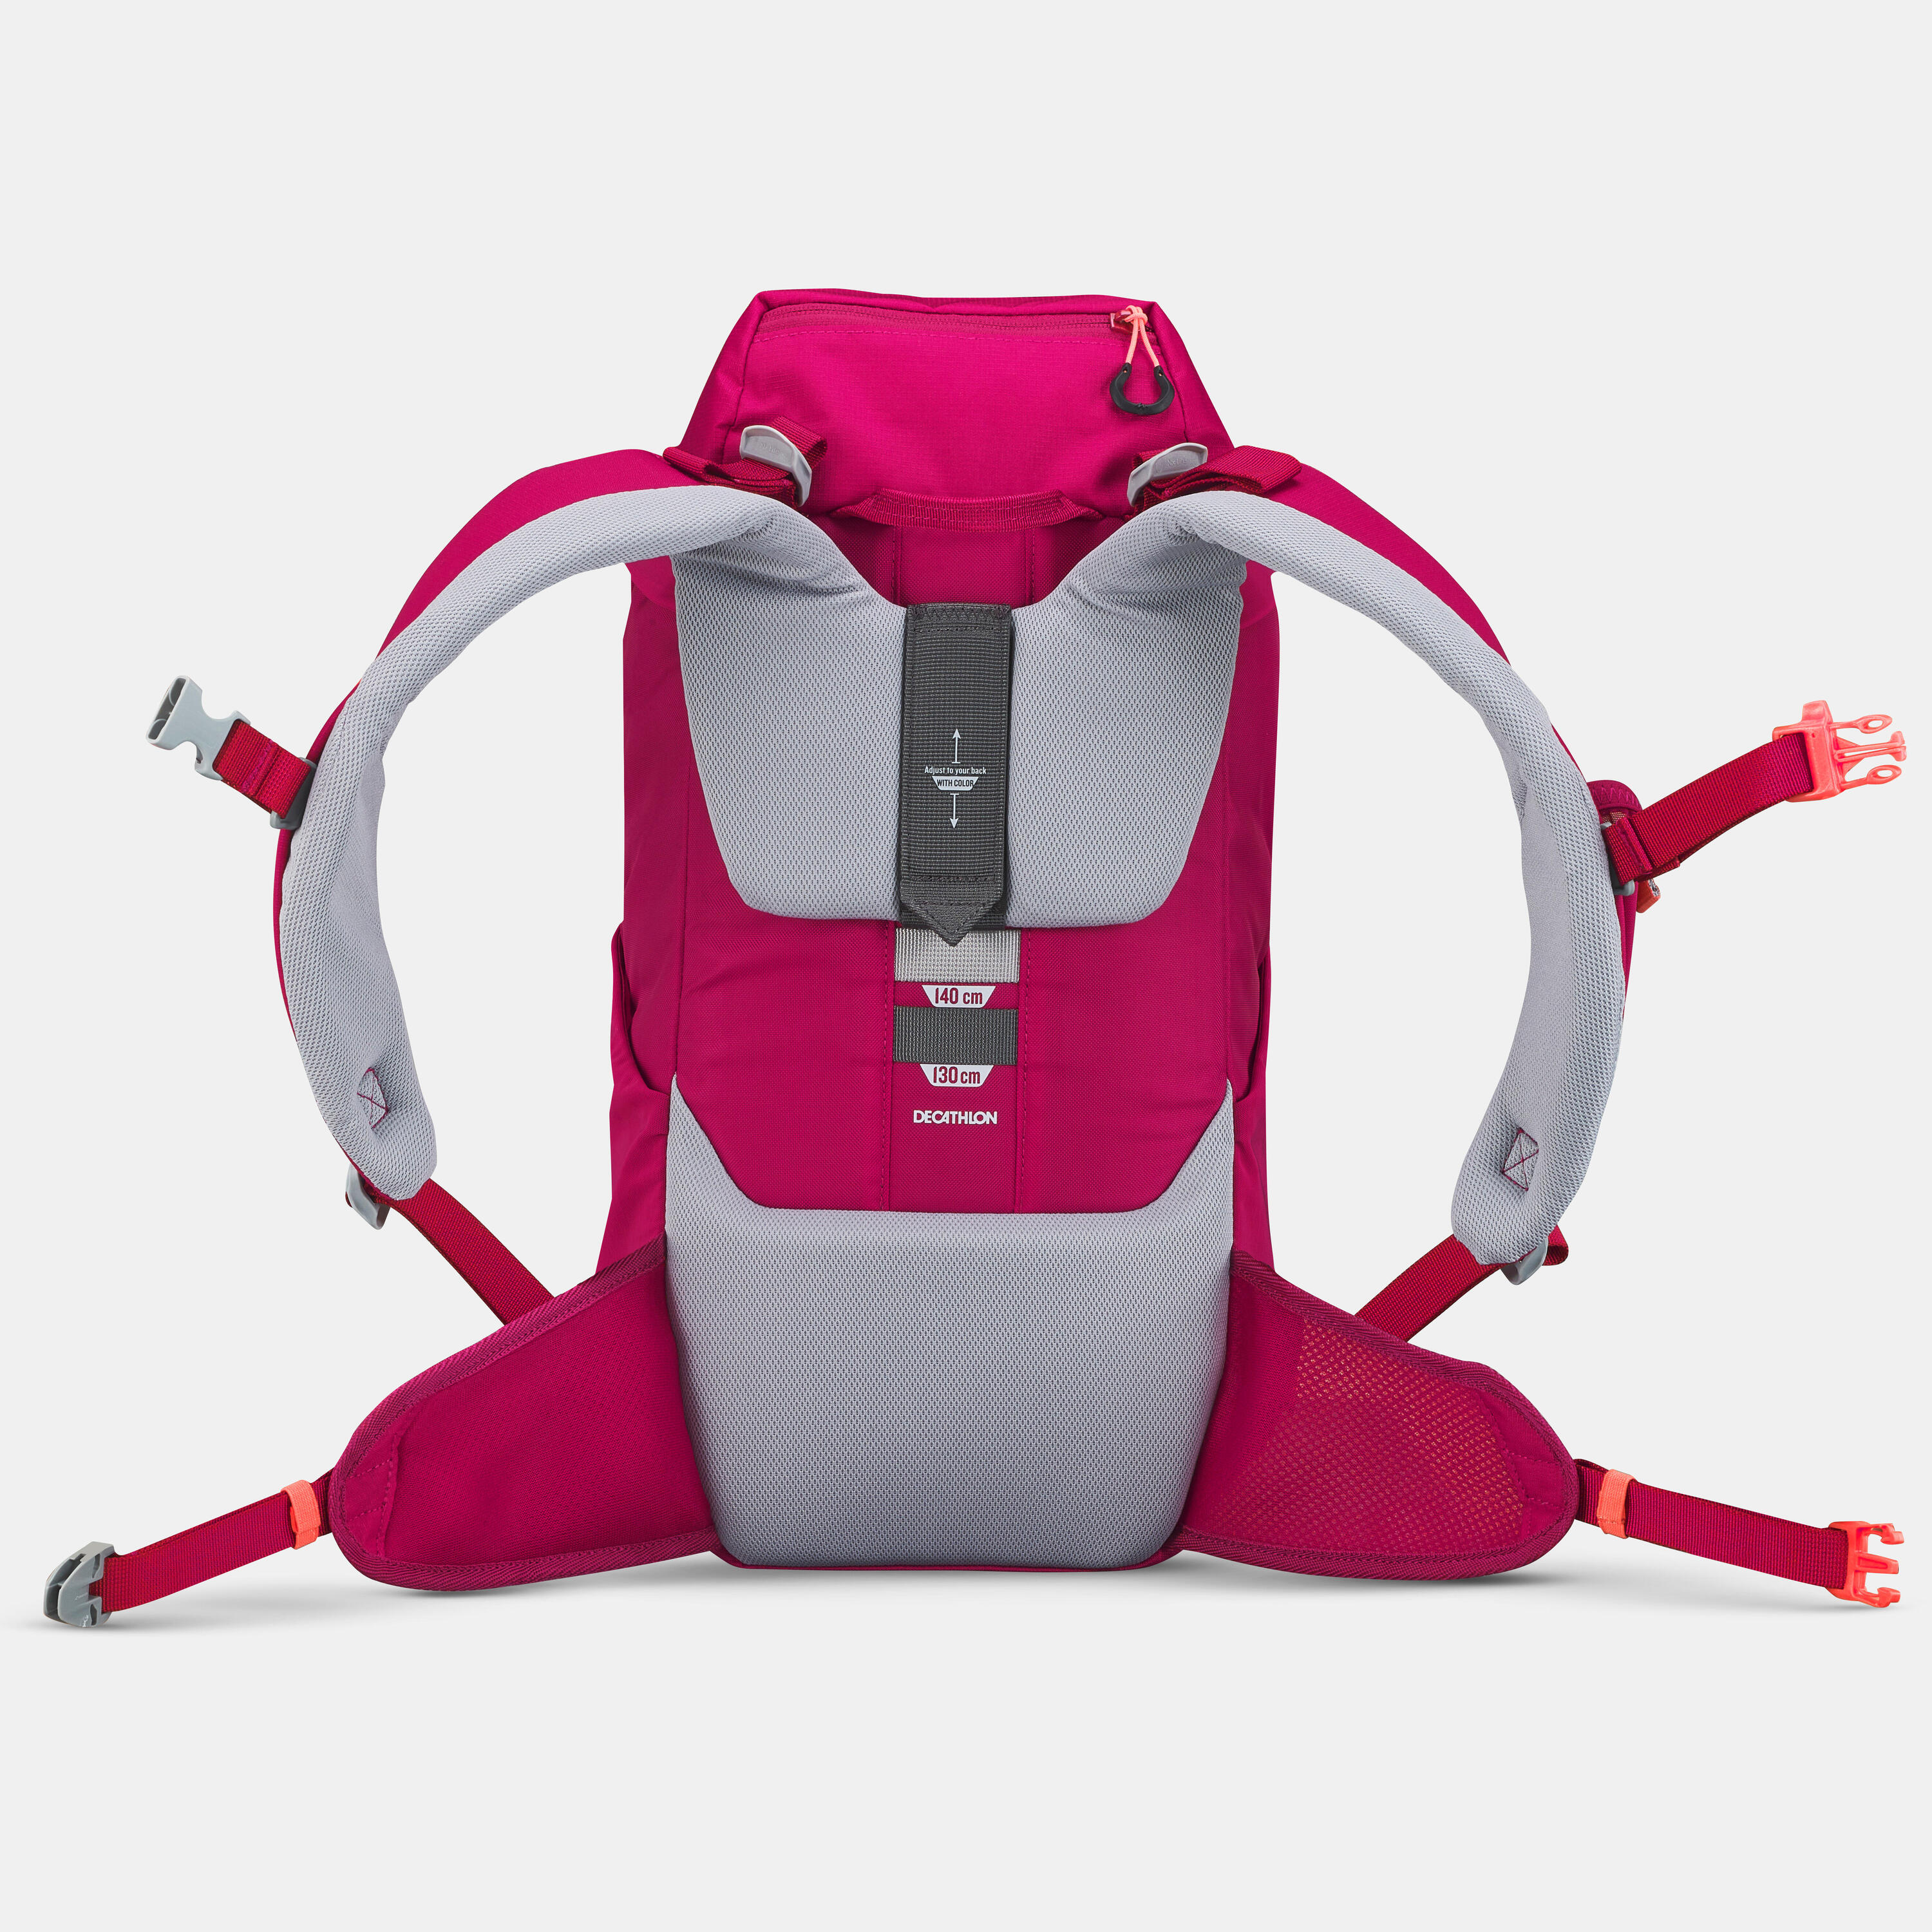 Kids' hiking backpack 18L - MH500 5/11